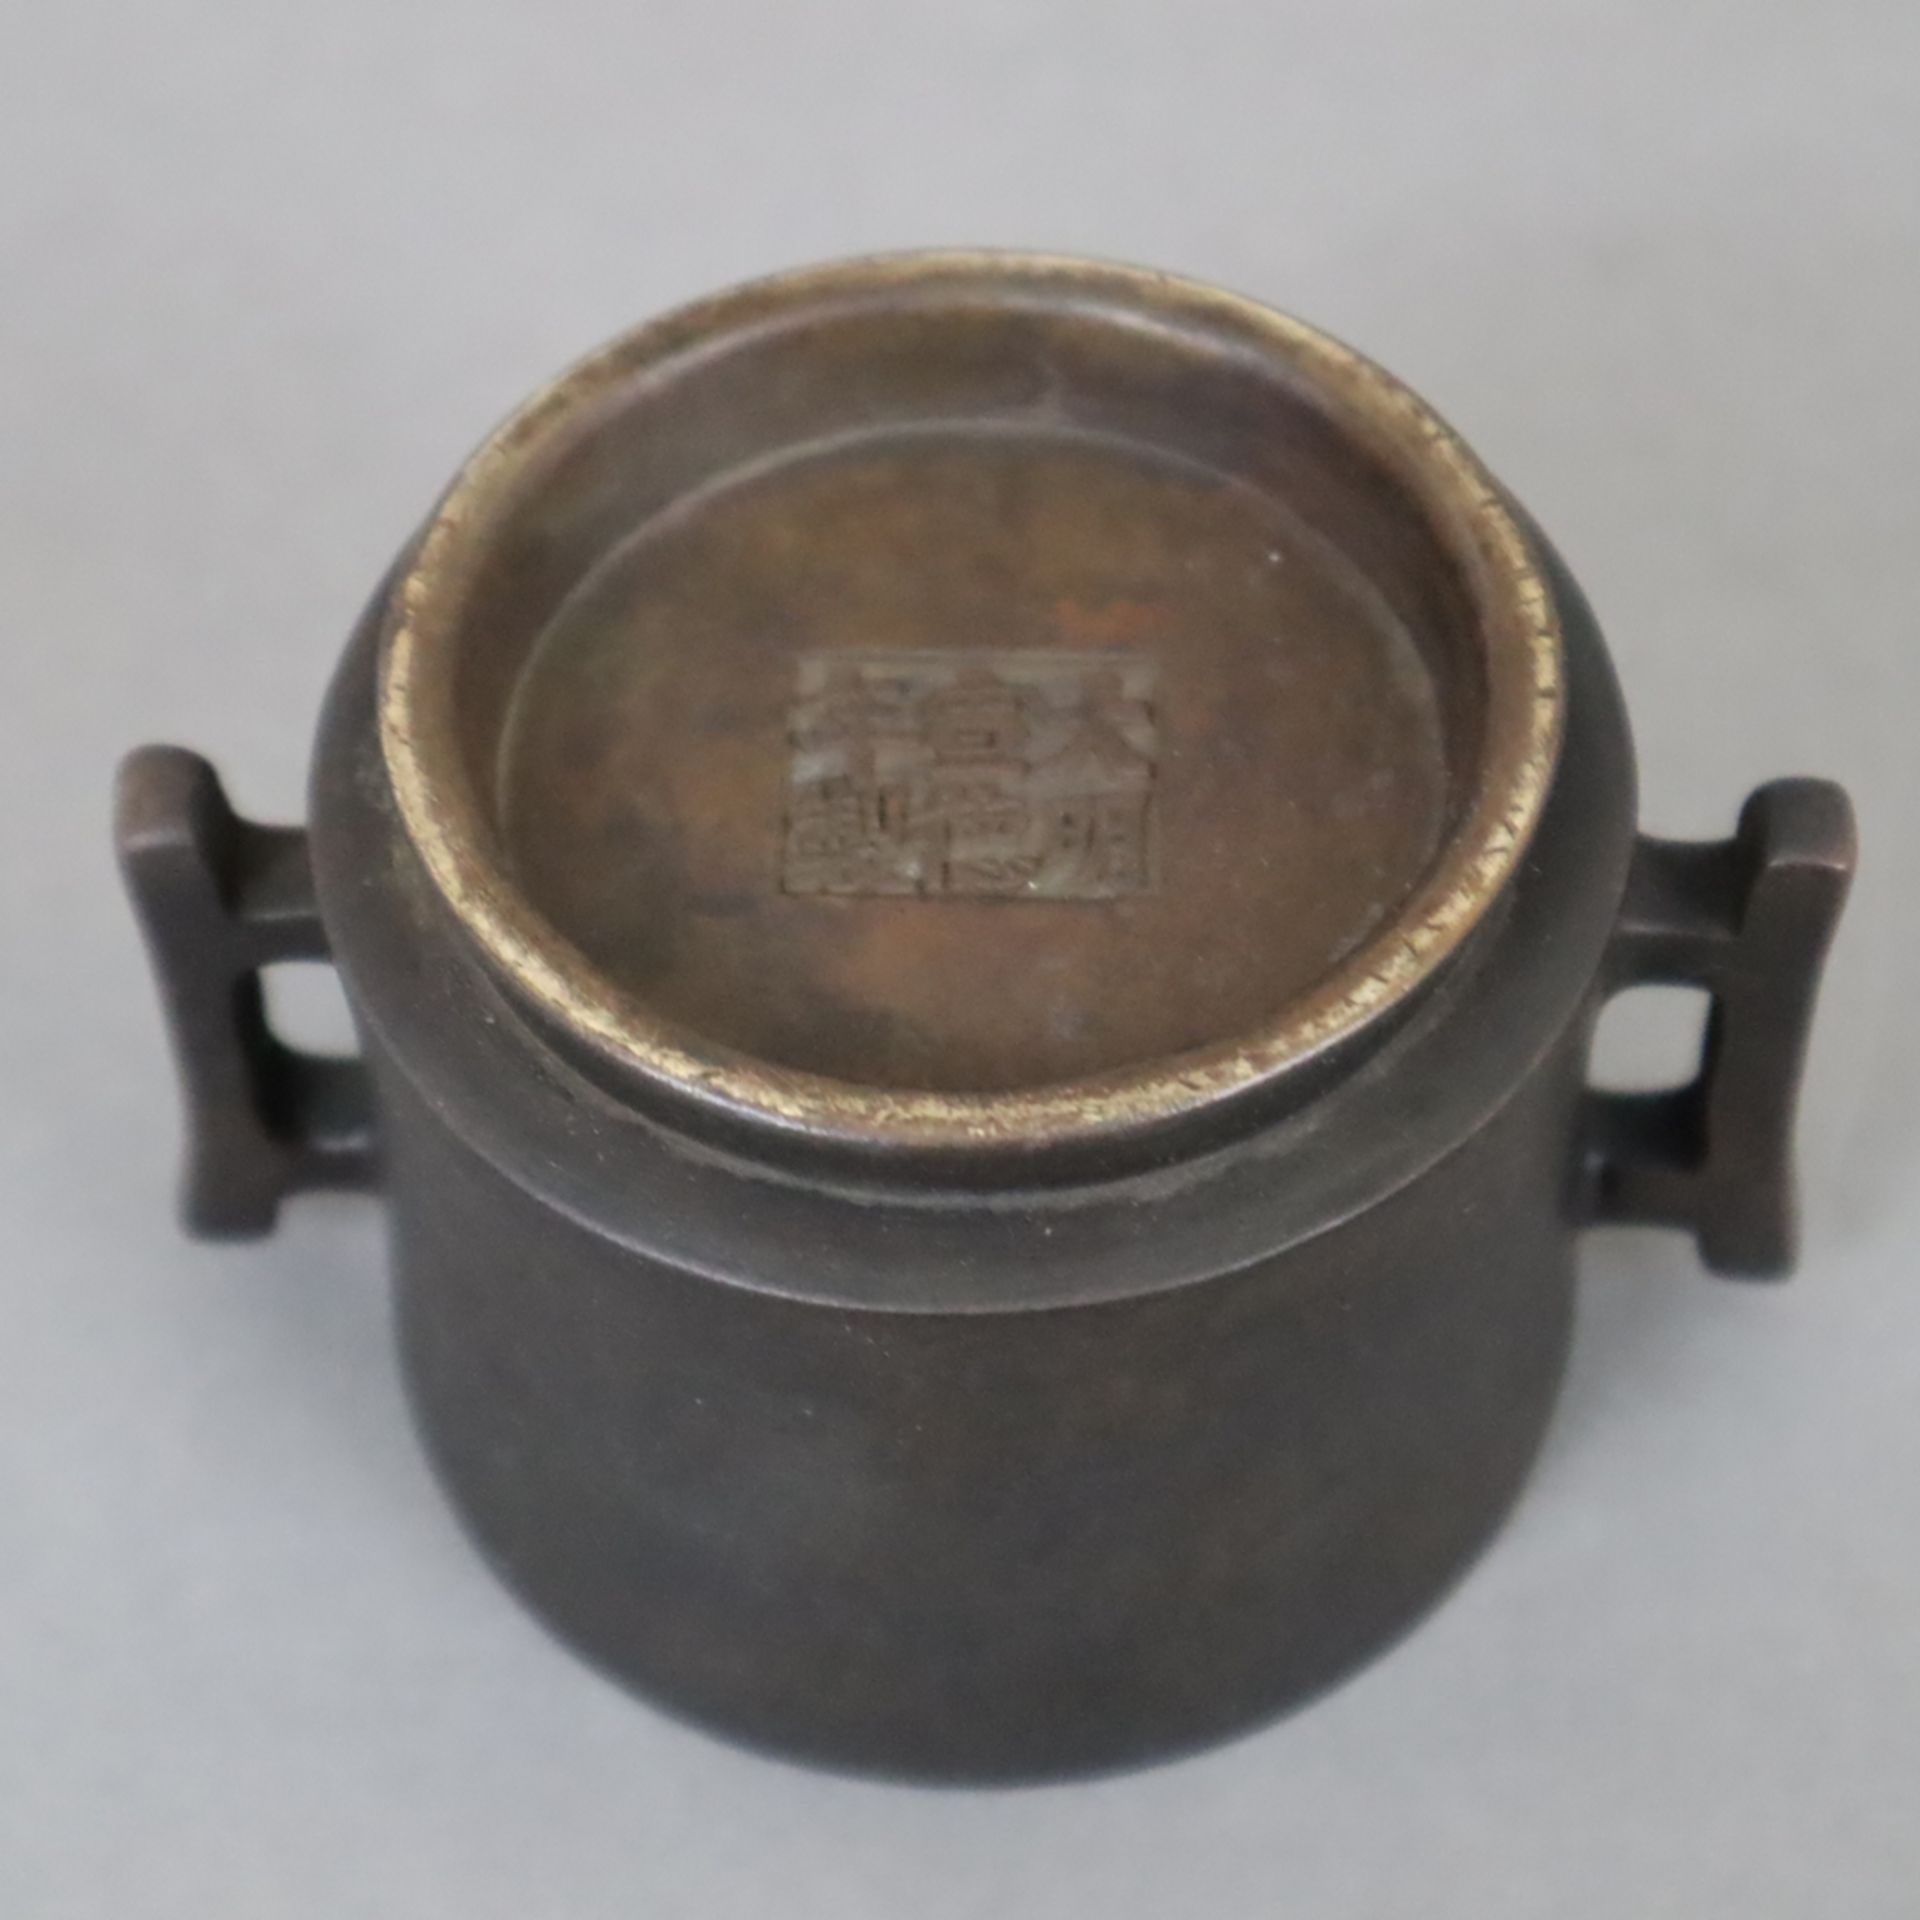 Kleines Räuchergefäß - Bronze mit dunkelbrauner Patina, zylindrisches leicht tailliertes Räuchergef - Bild 5 aus 6